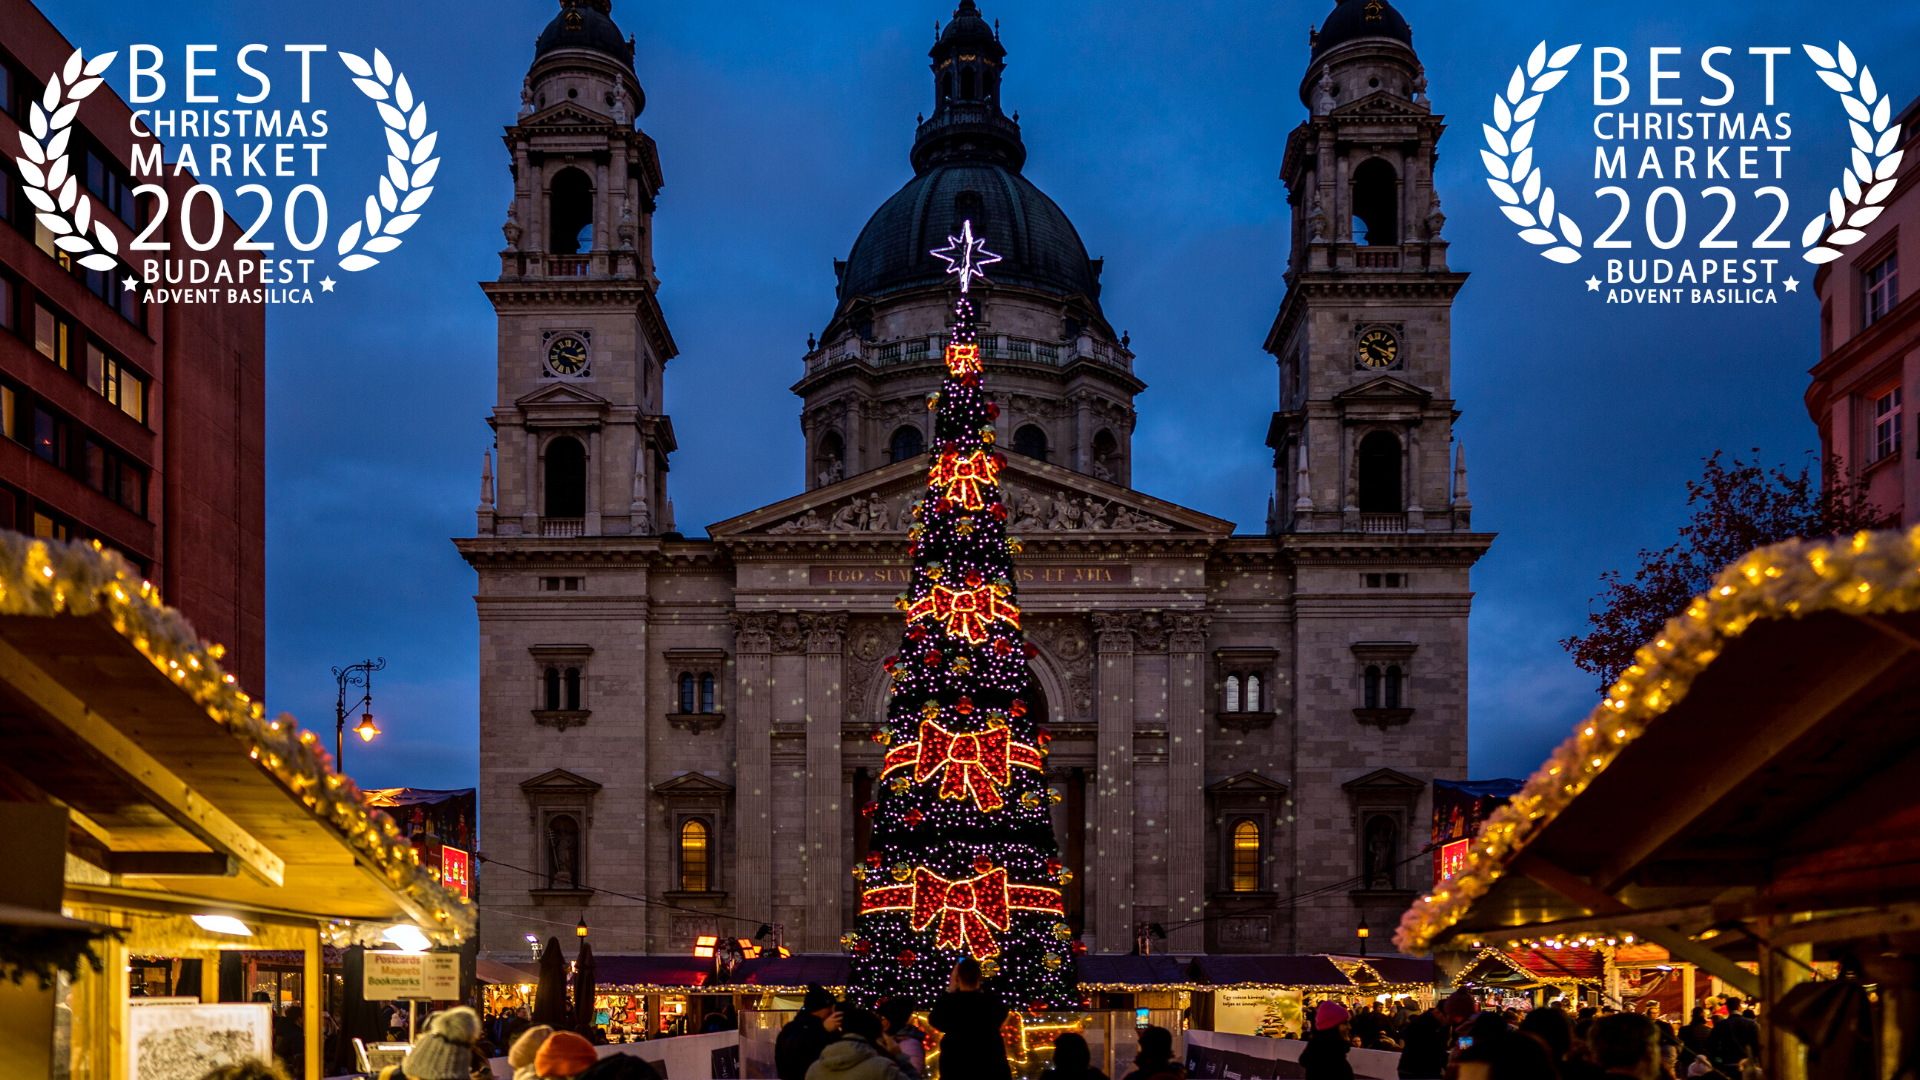  Advent Bazilika: november 18-án nyit Európa legjobb karácsonyi vására